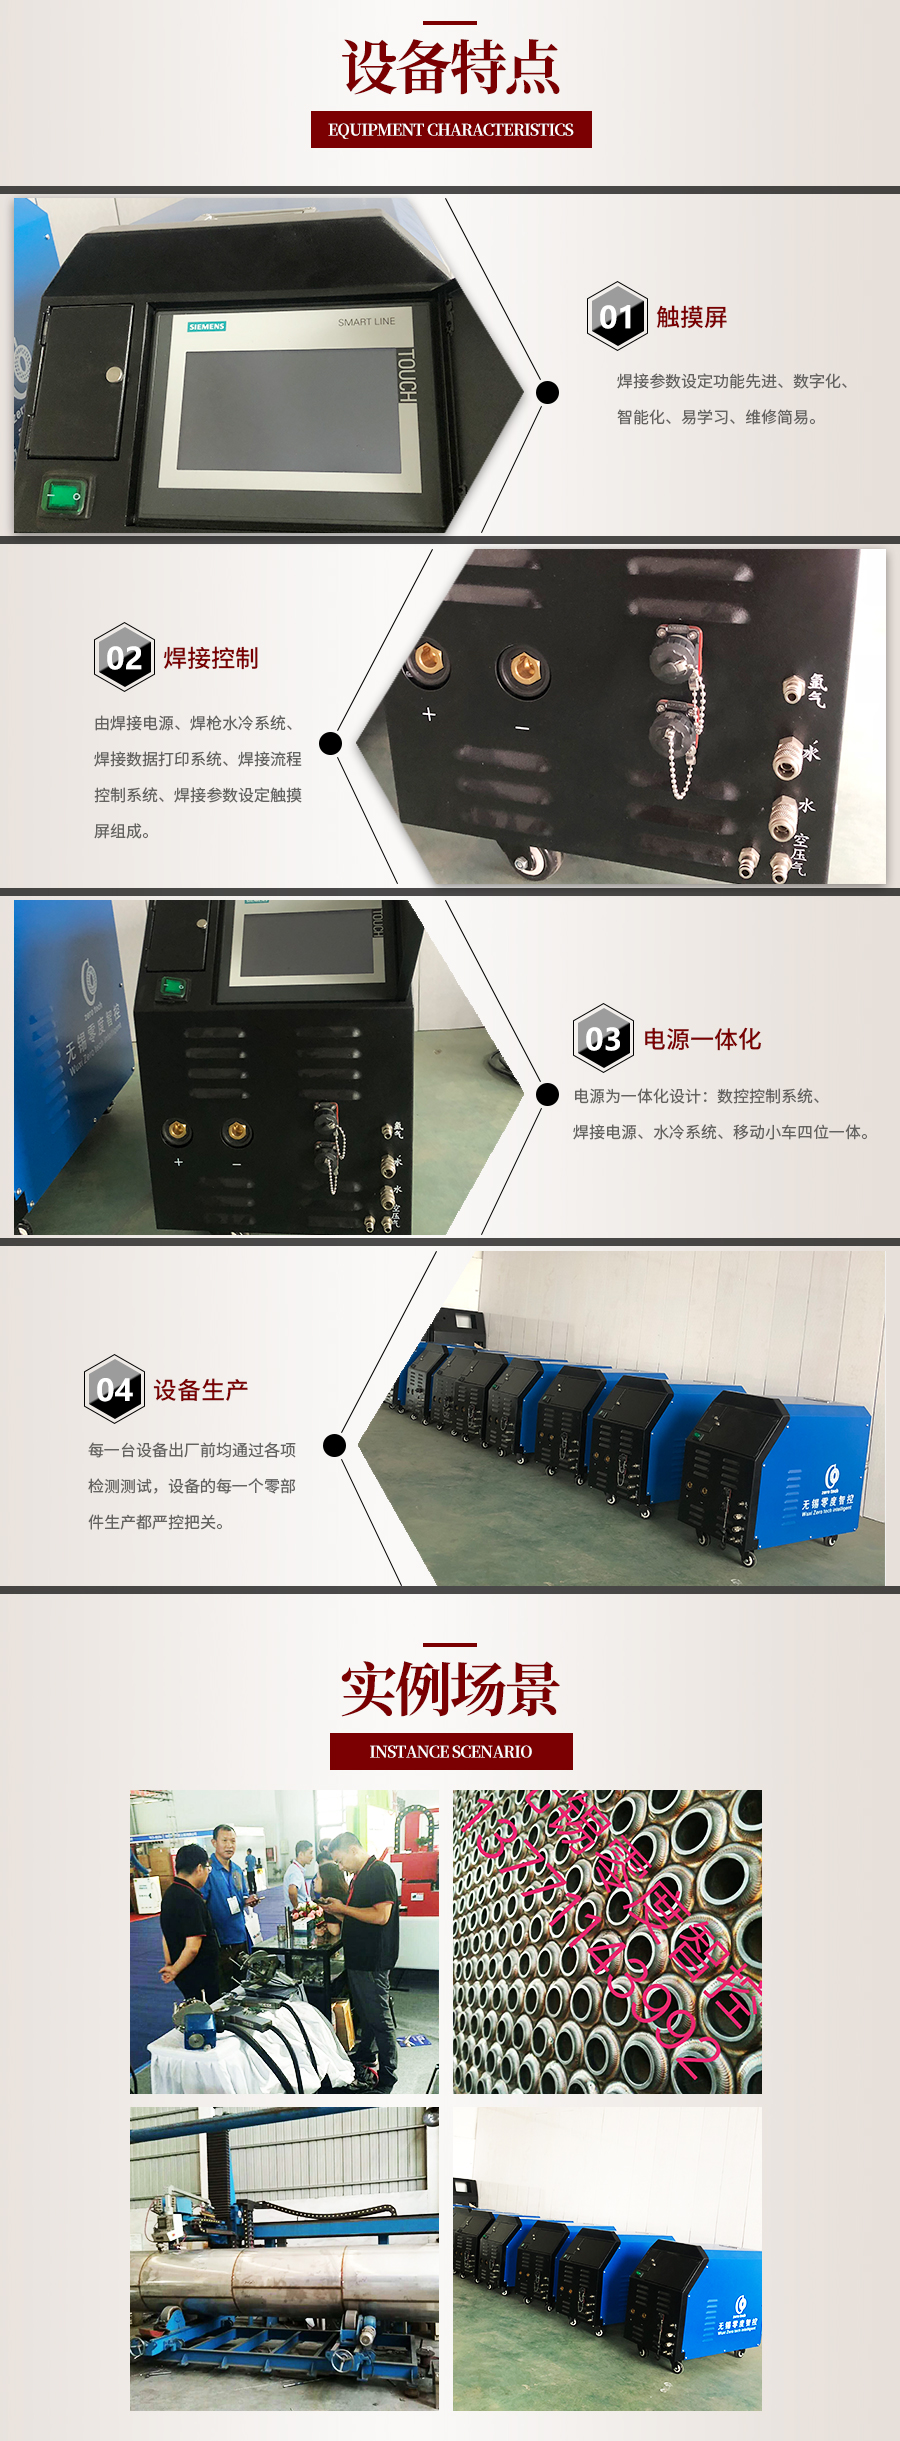 LD-200数控焊接电源_03.jpg